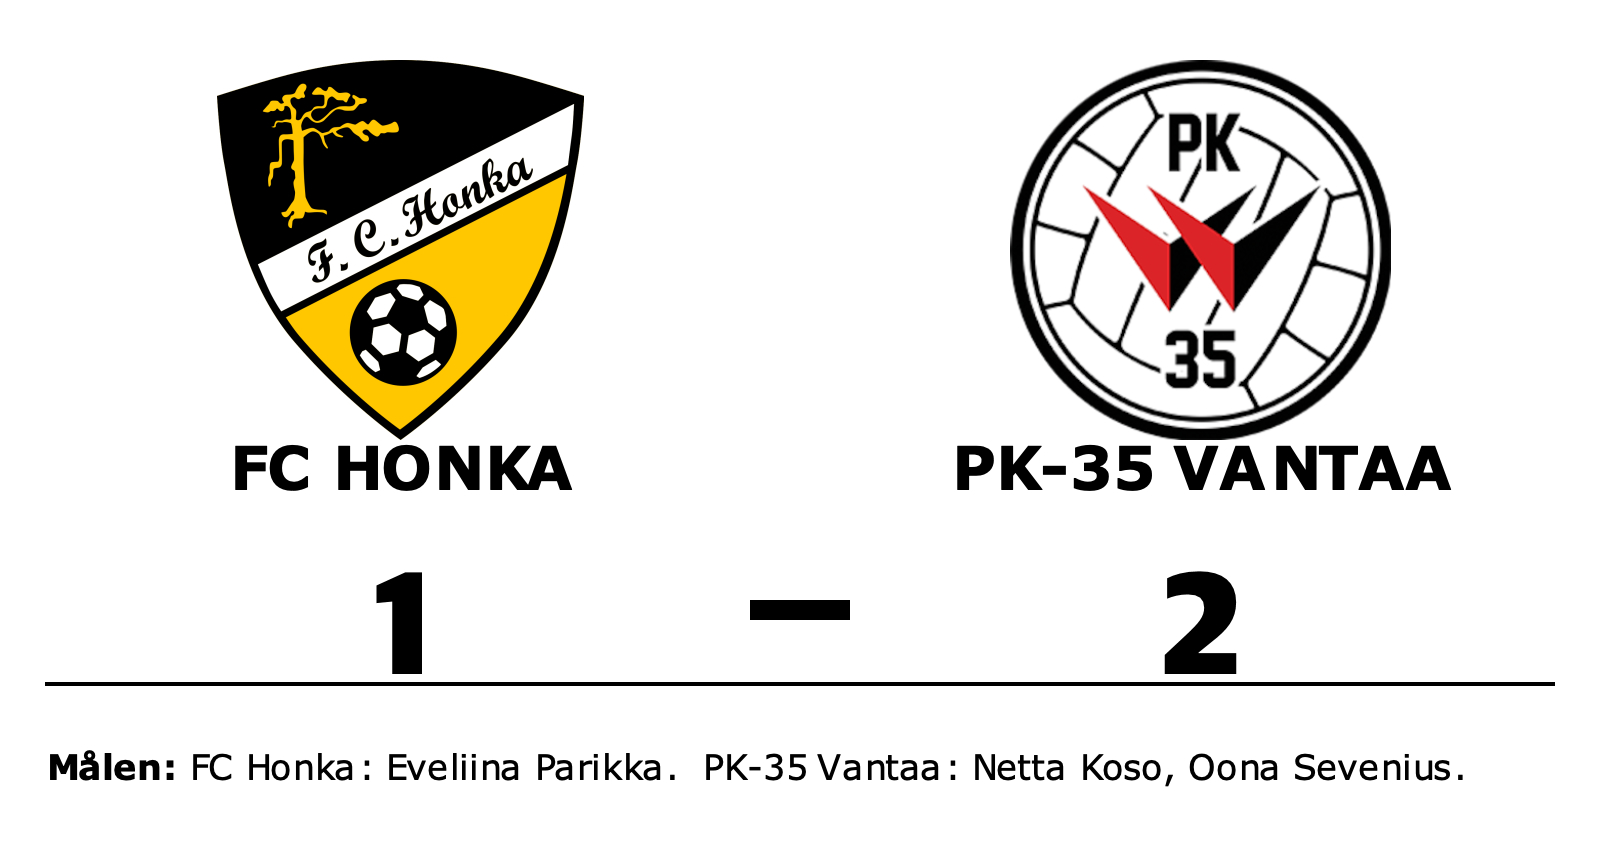 FC Honka förlorade mot PK-35 Vantaa